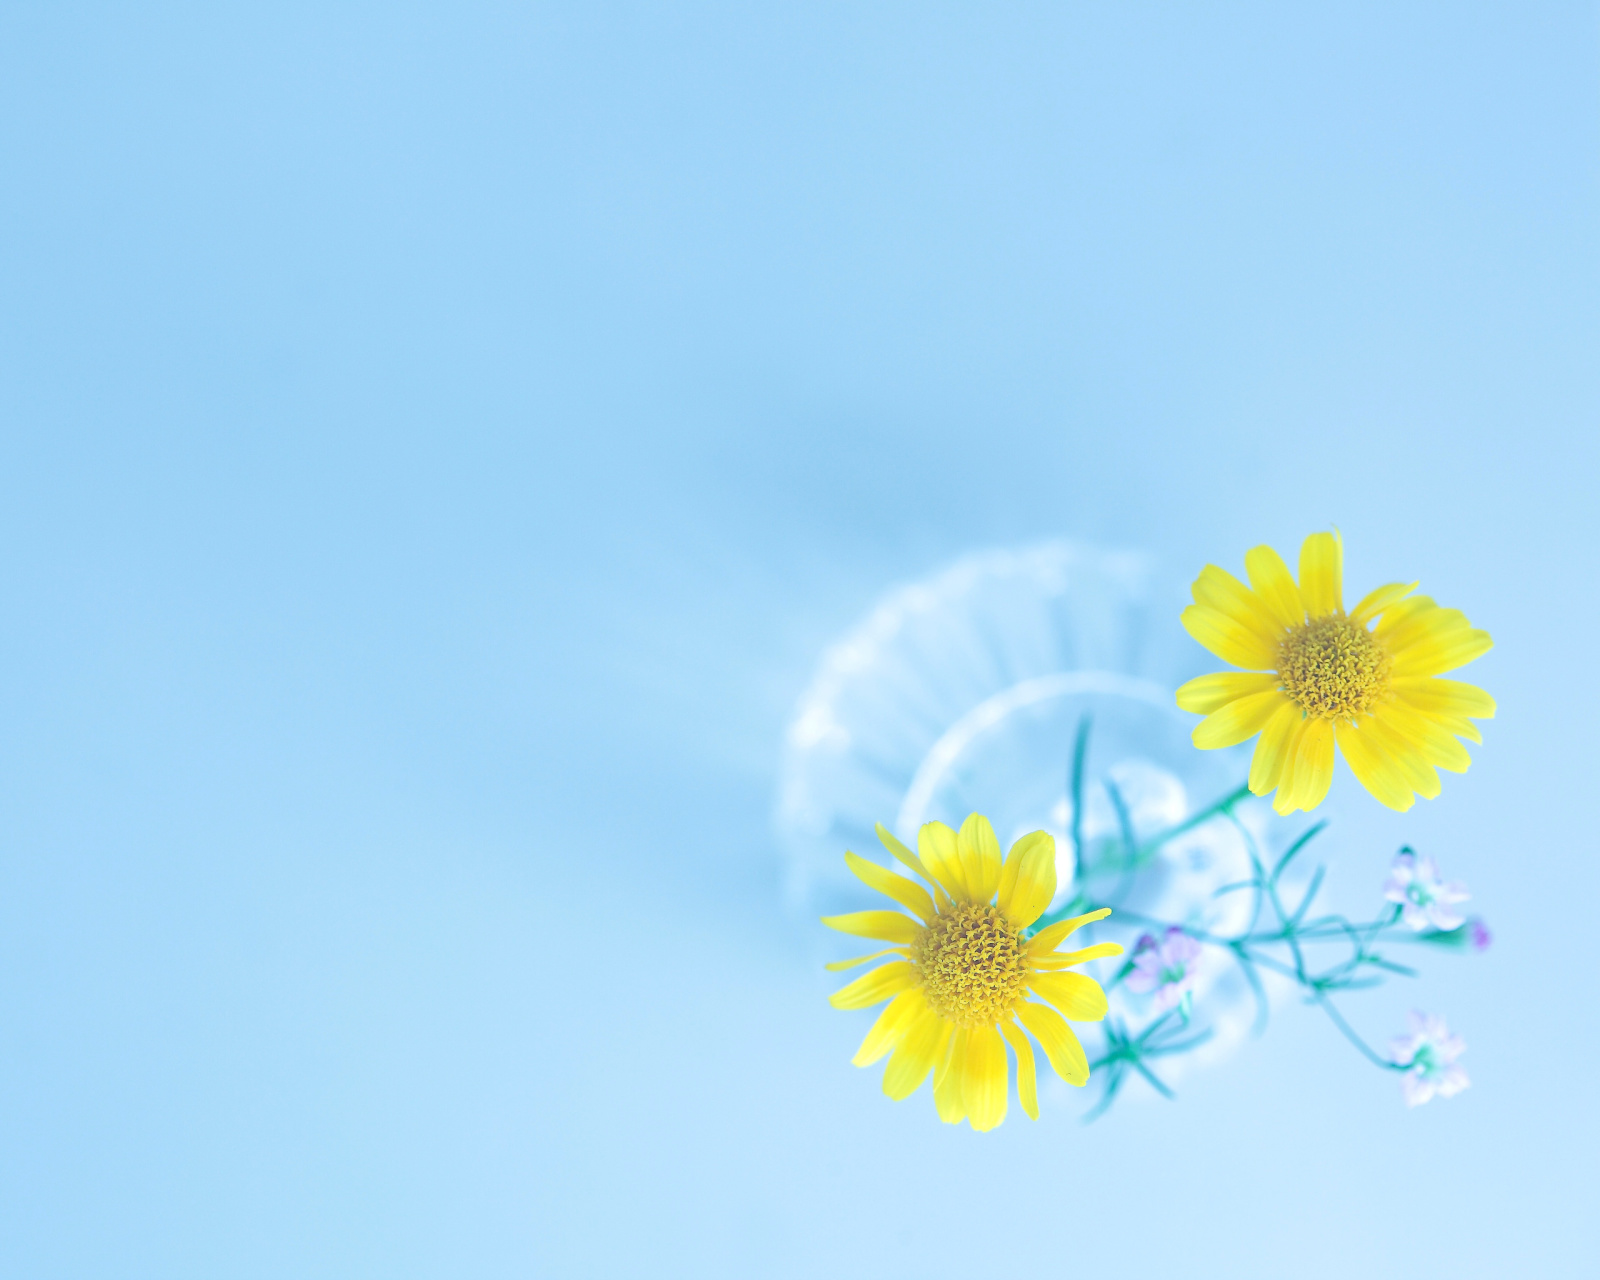 Simple flower in vase screenshot #1 1600x1280